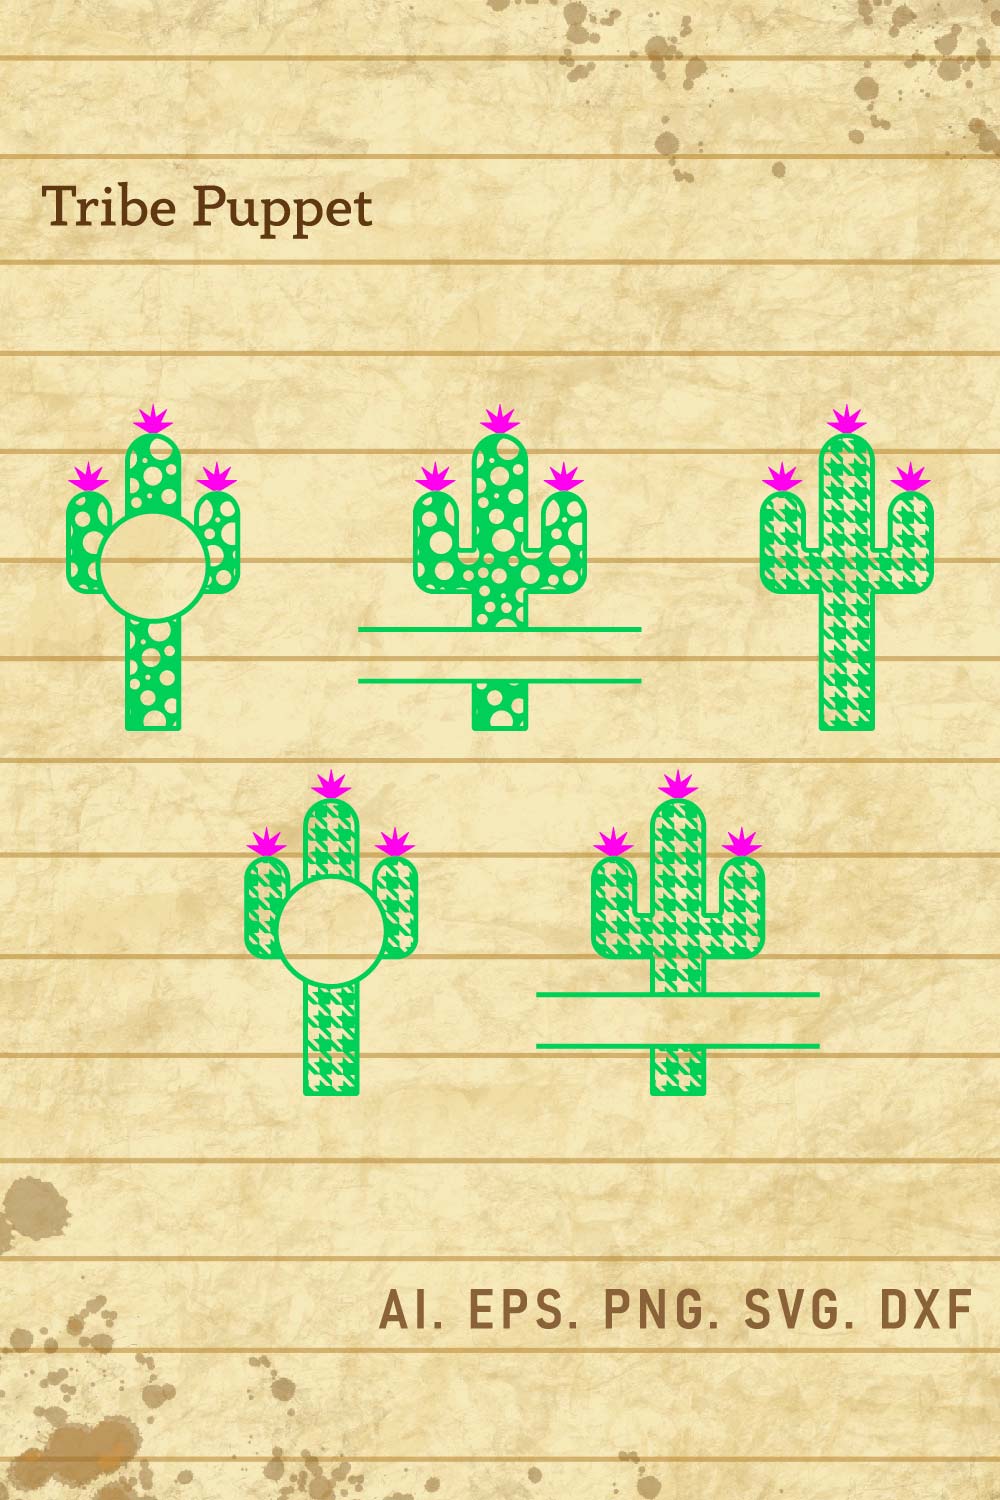 Cactus Bundle pinterest preview image.